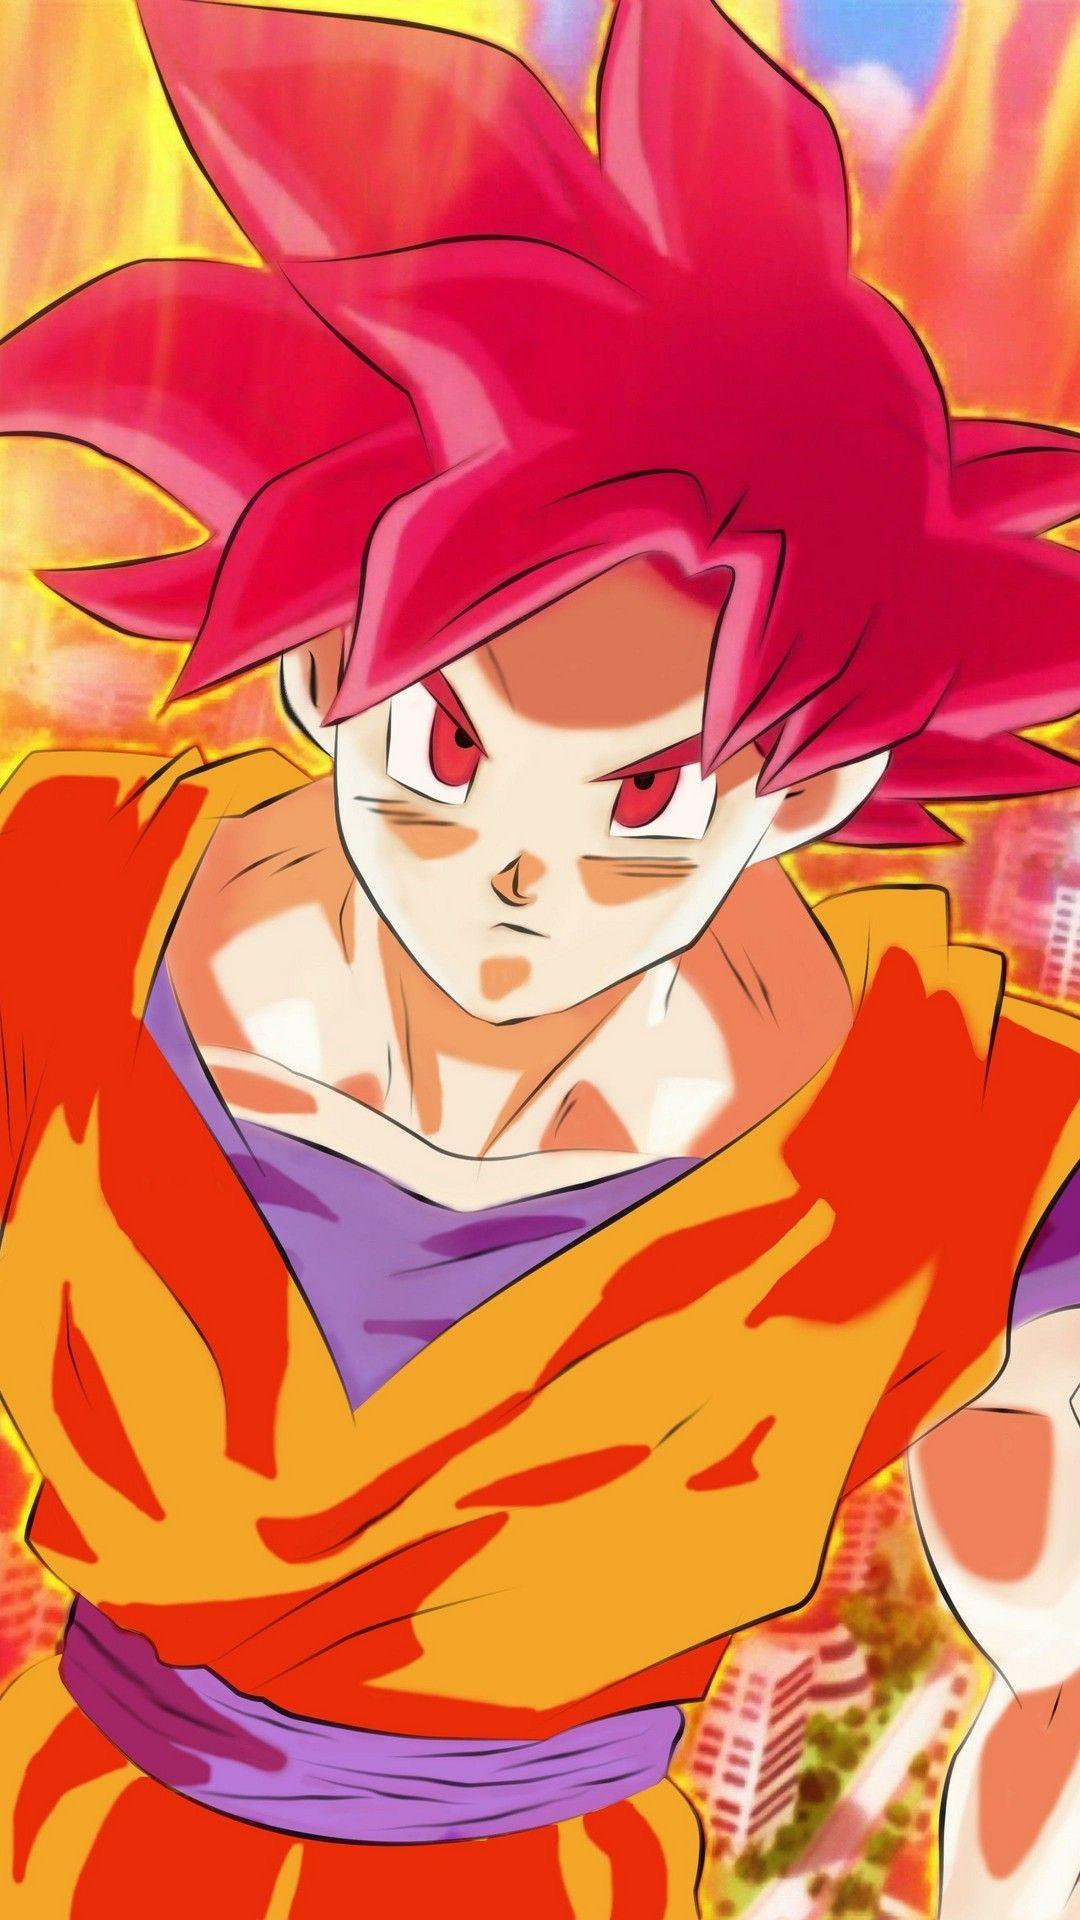 Hình nền 1080x1920 Goku Super Saiyan God Android - 2019 Android